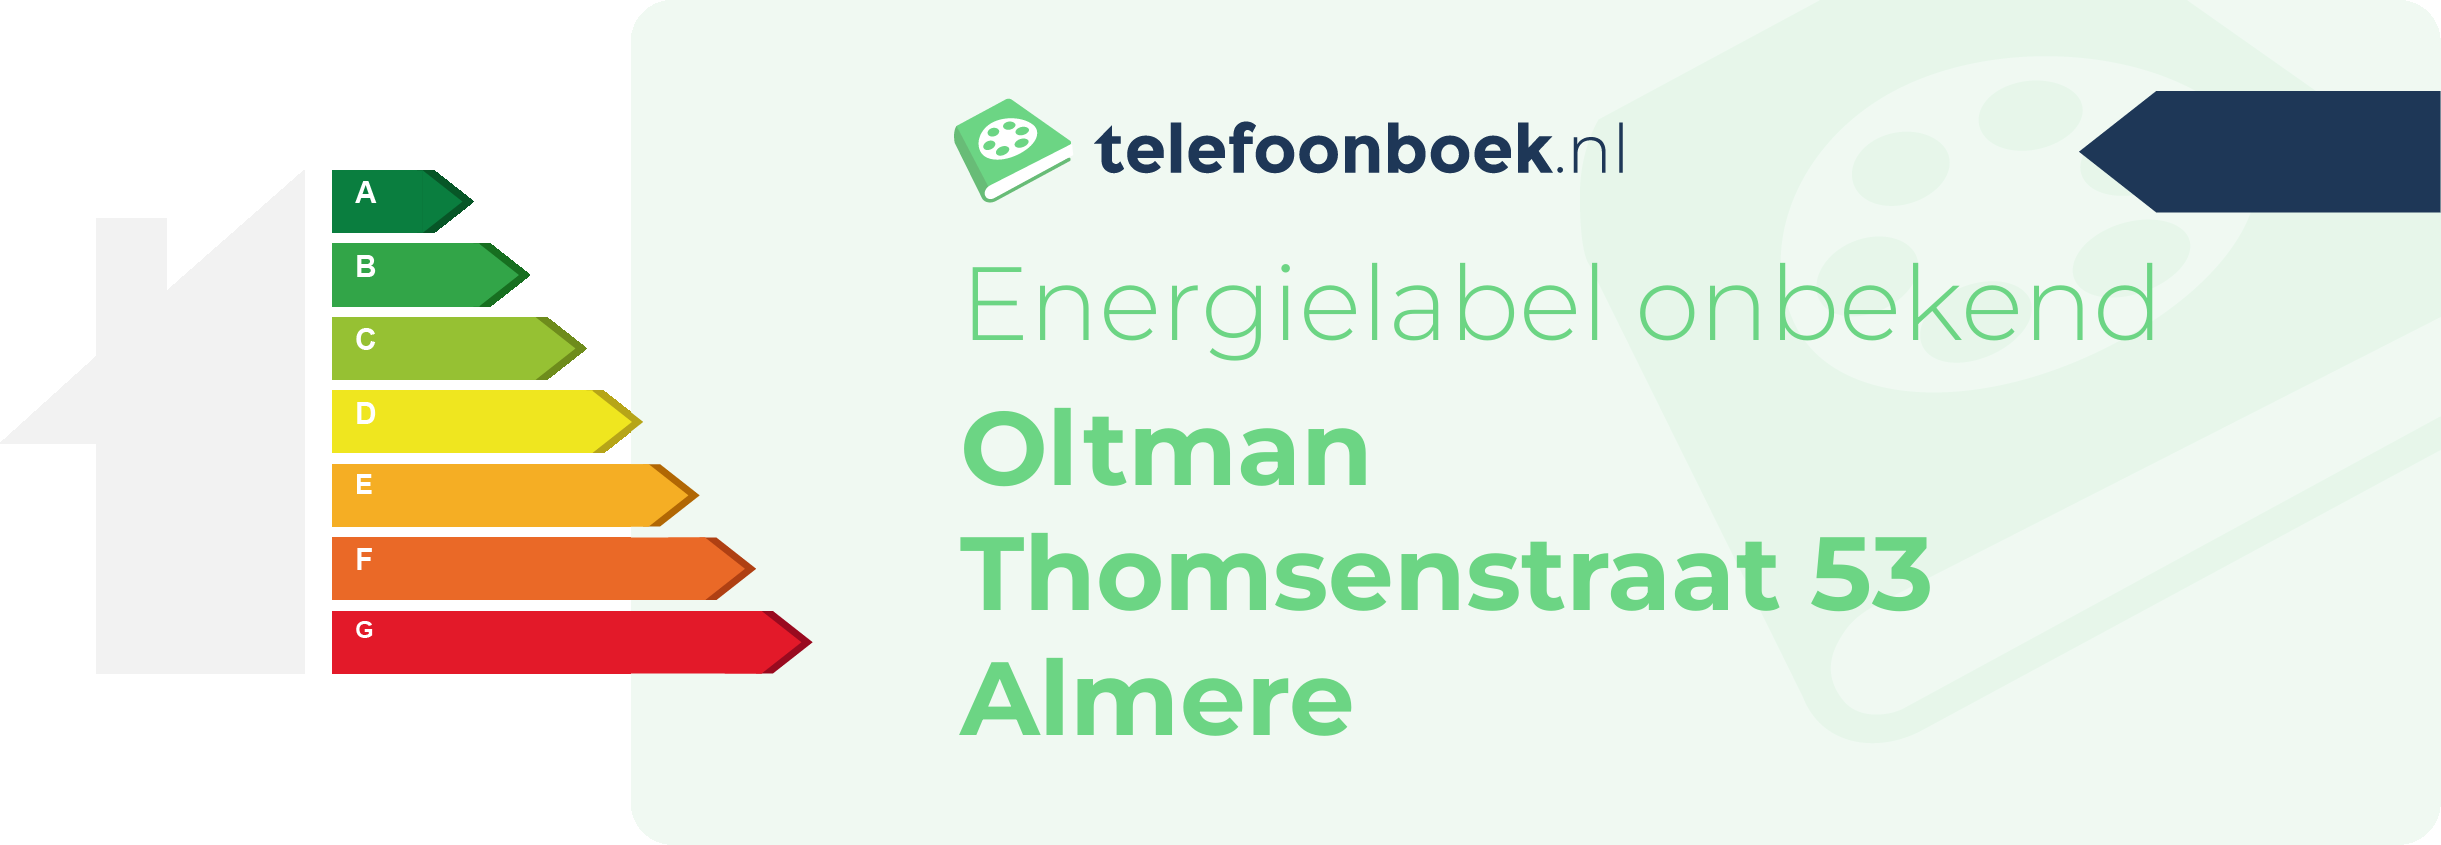 Energielabel Oltman Thomsenstraat 53 Almere